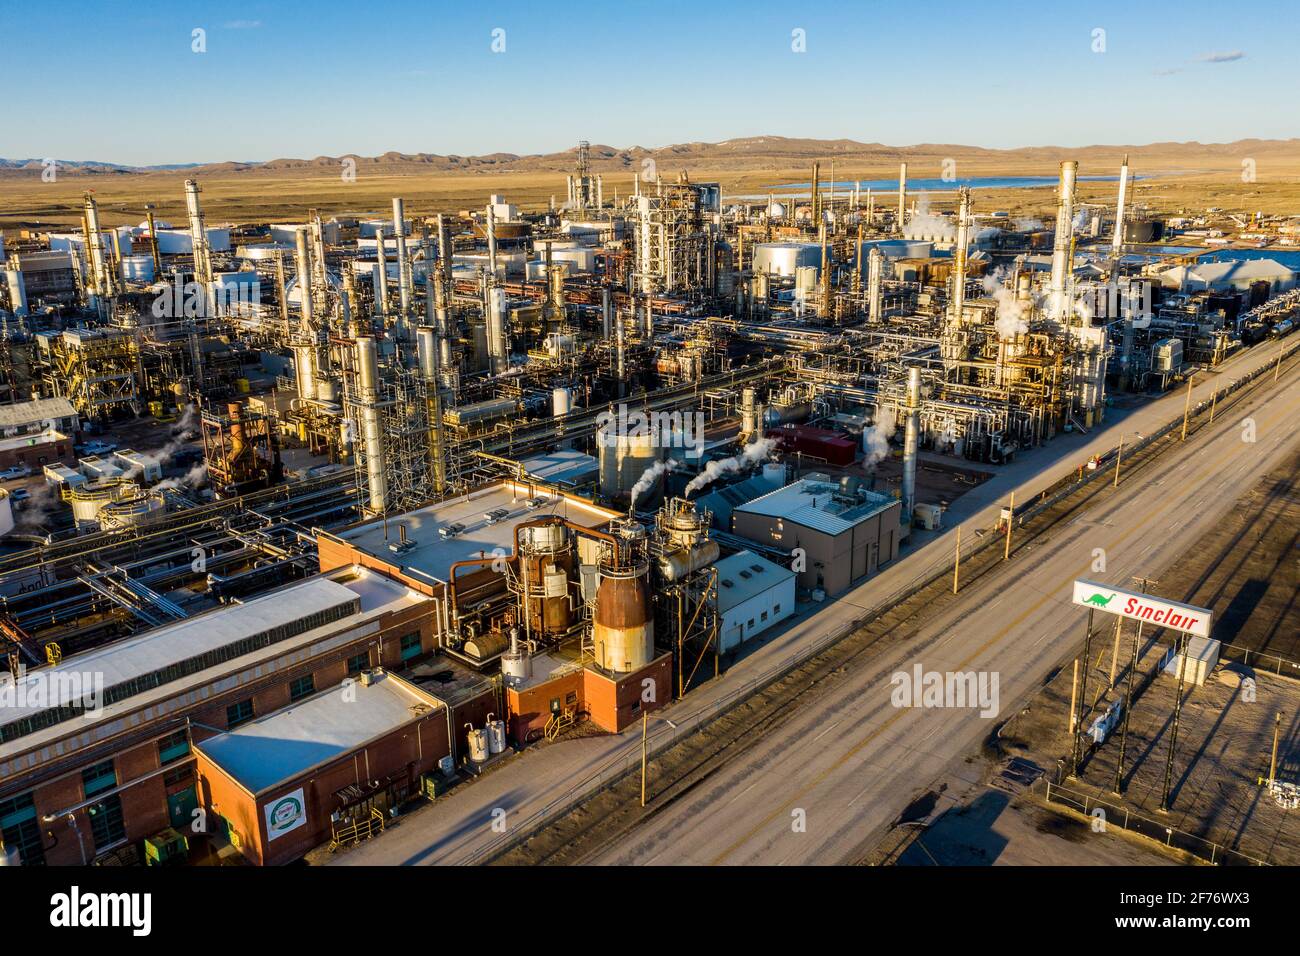 Refinería de aceite Sinclair, Sinclair, Wyoming, EE.UU Foto de stock